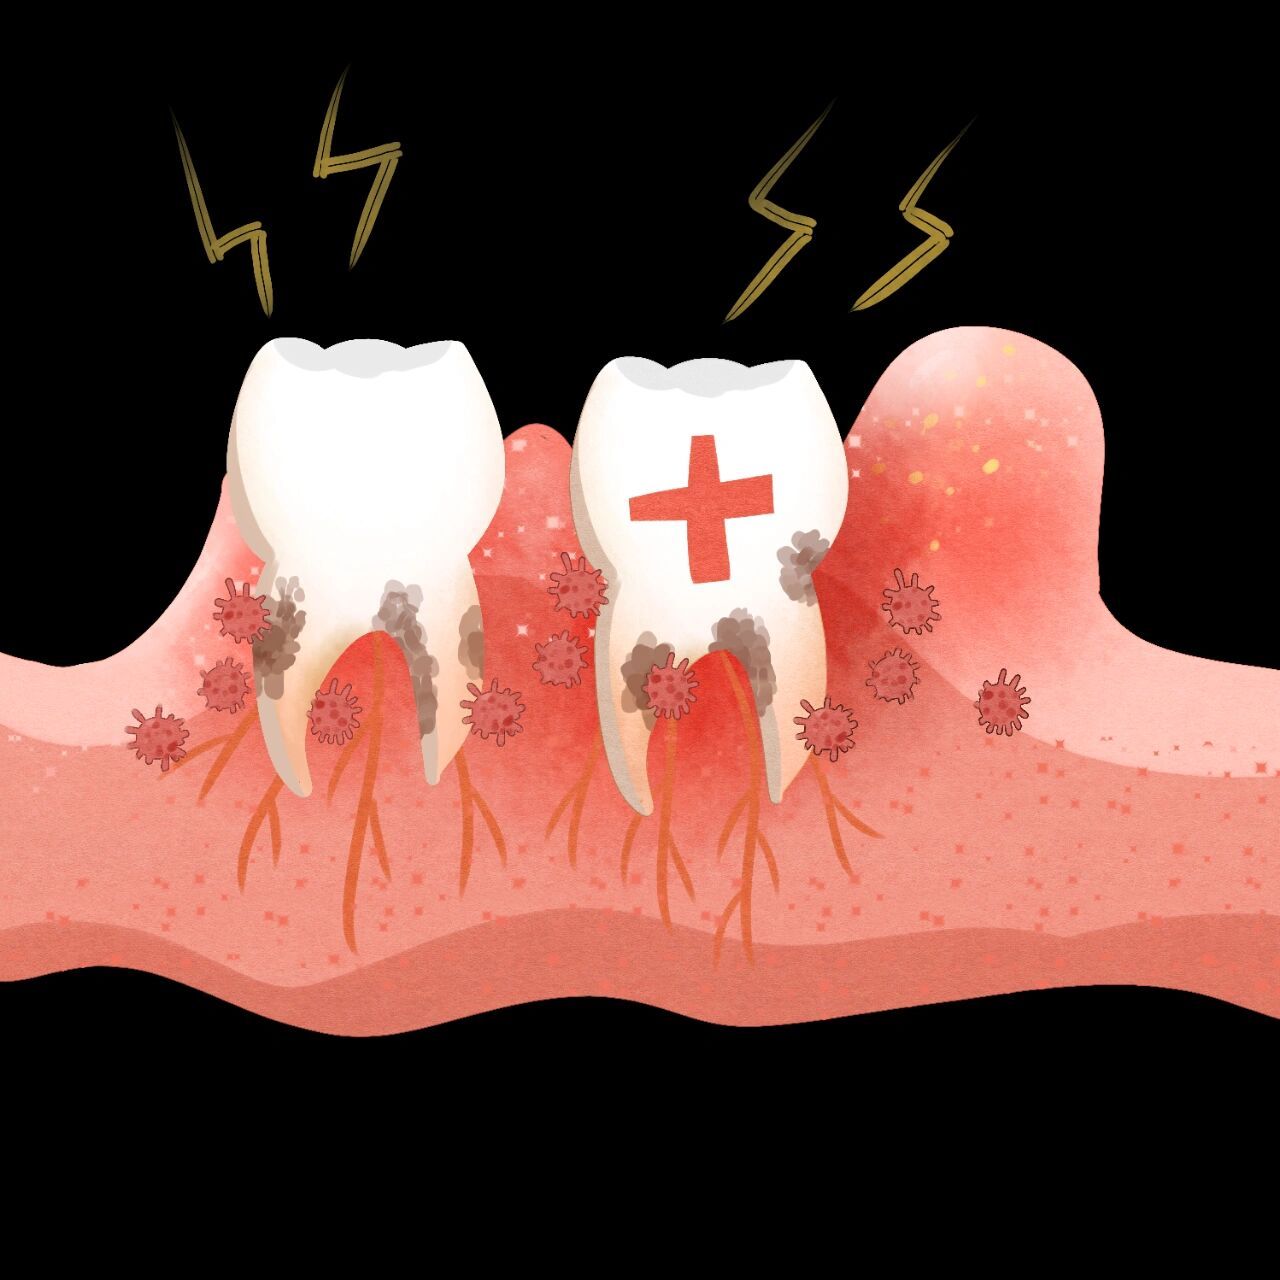 牙龈炎的原因和治疗方法 牙龈炎 牙龈炎是一种轻度的牙周病形势,特征